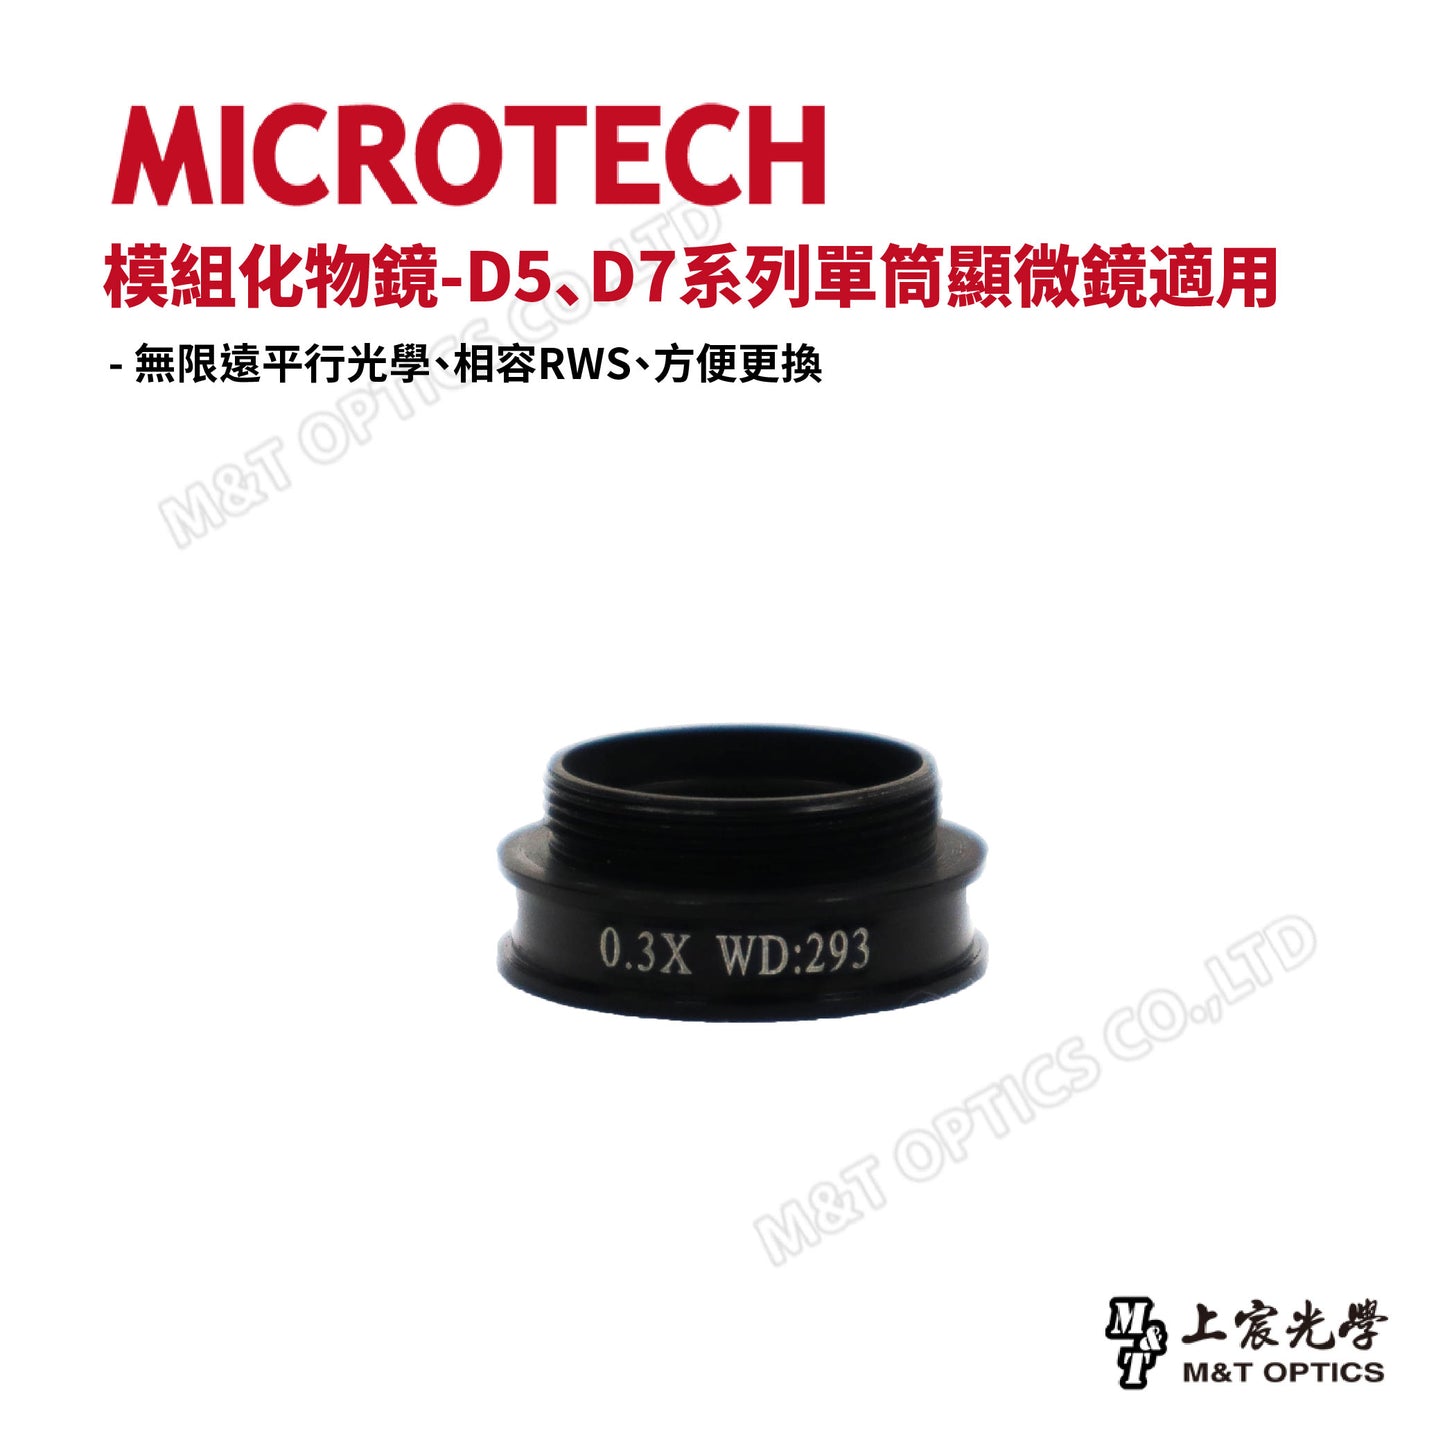 MICROTECH 模組化物鏡 D5、D7系列單筒顯微鏡適用-原廠保固一年